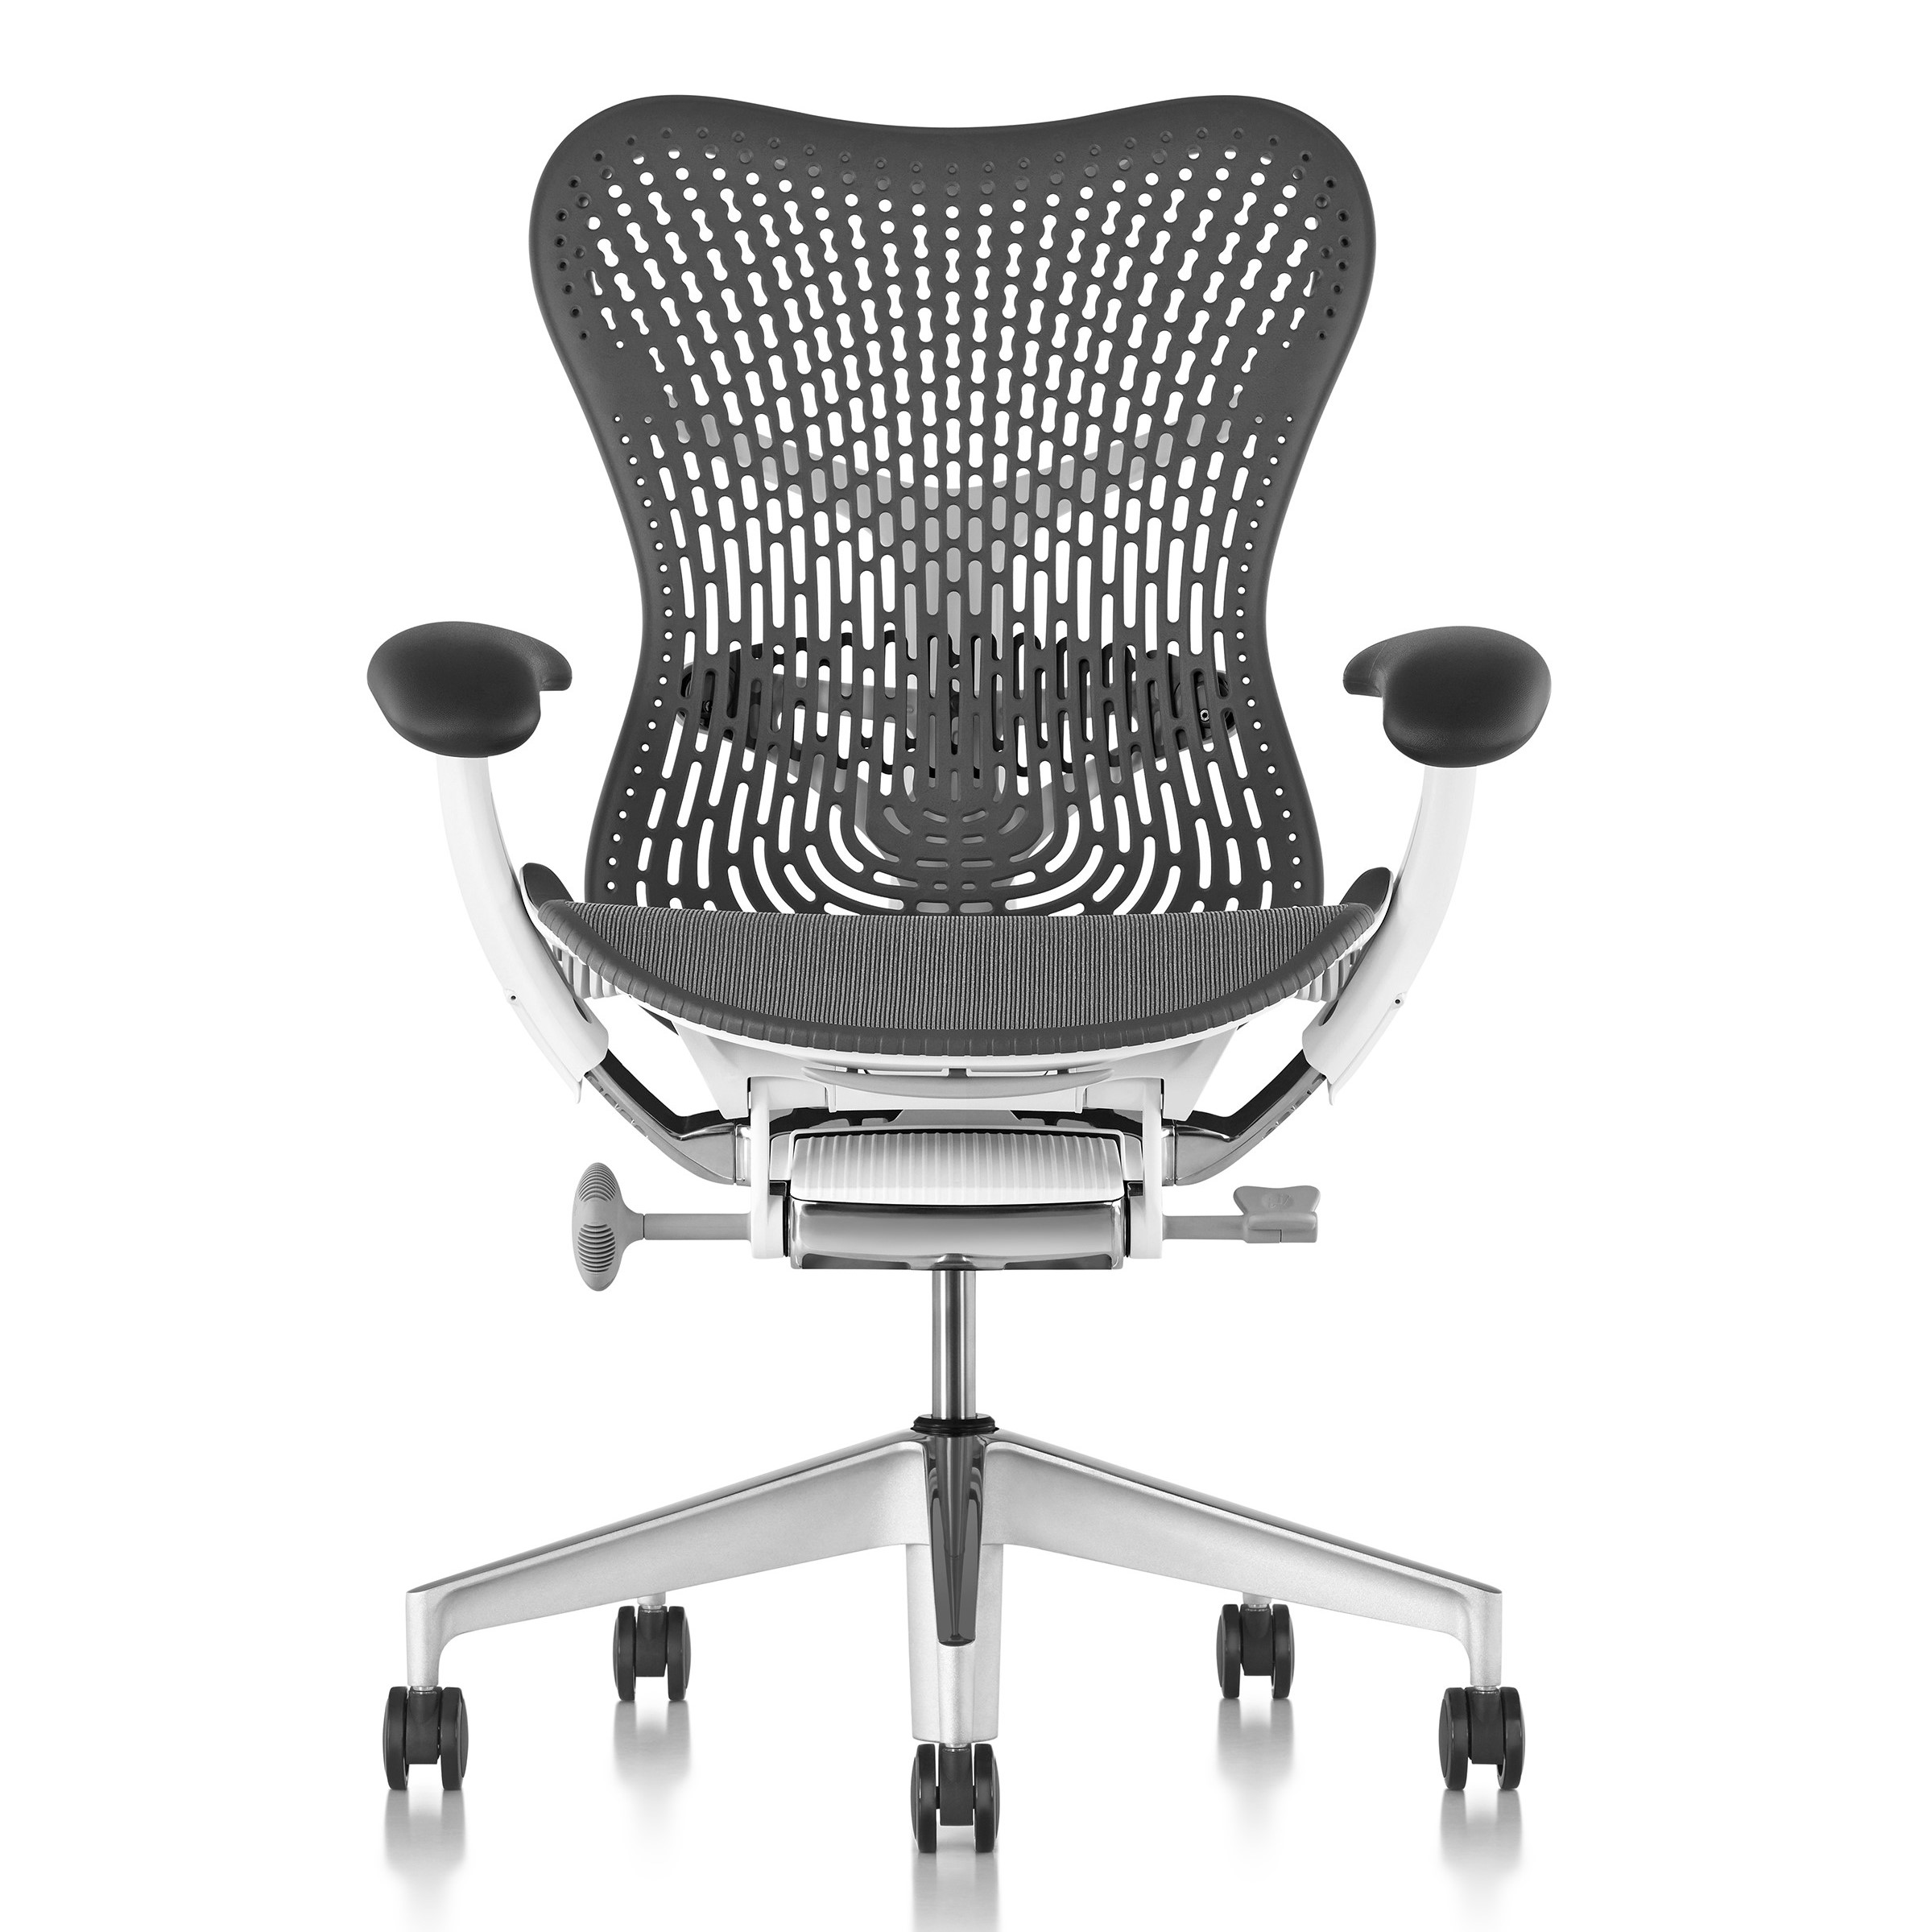 Mirra 2 Chair, TriFlex Back